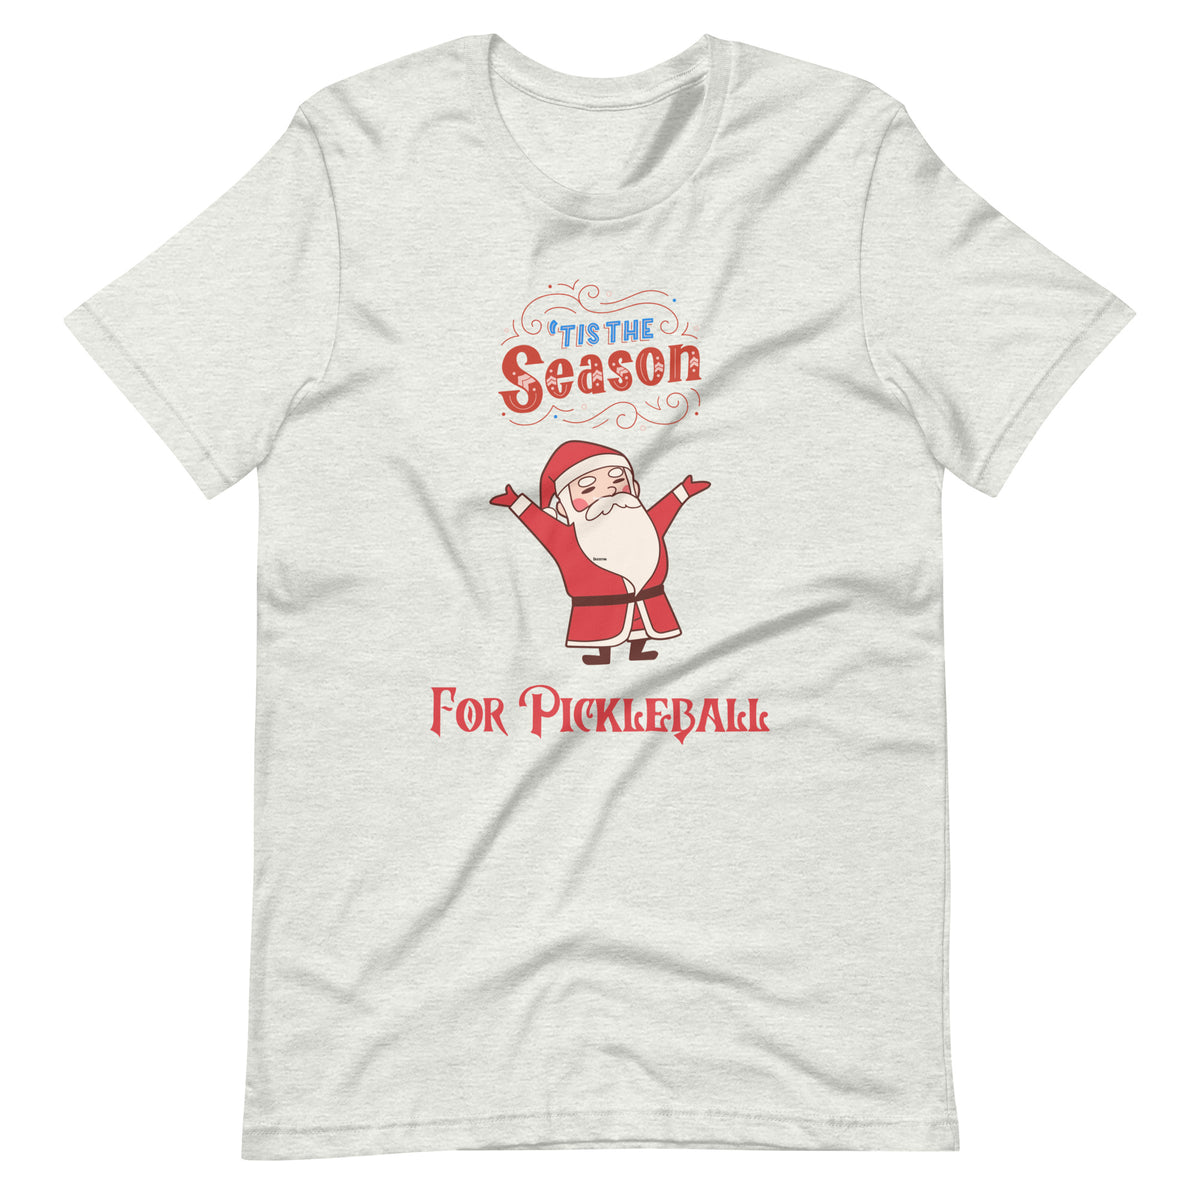 'Tis the Season for Pickleball T-shirt